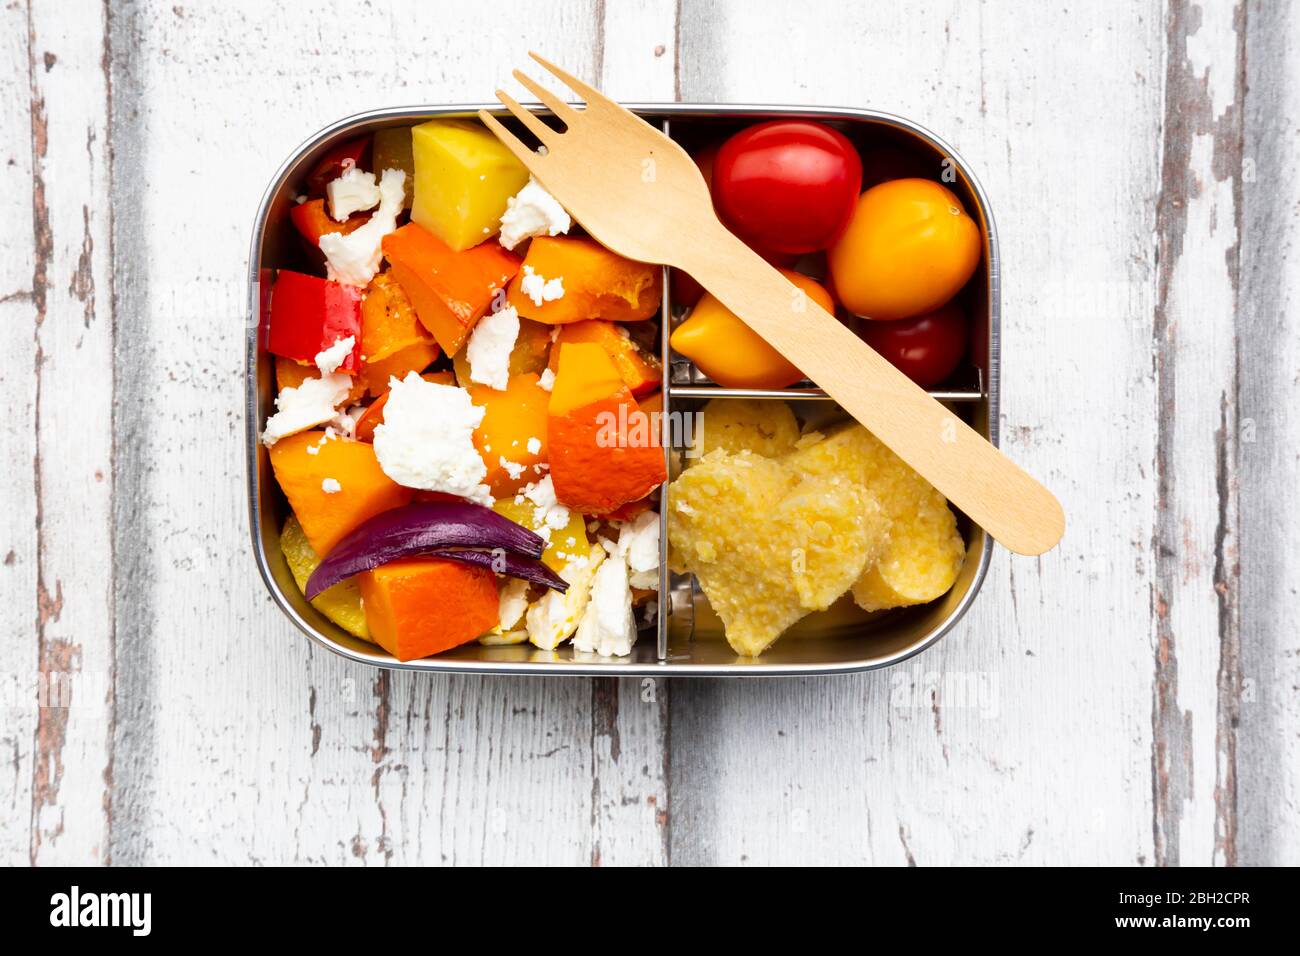 Pranzo al sacco con verdure cotte al forno d'autunno, formaggio feta e polenta a forma di cuore Foto Stock